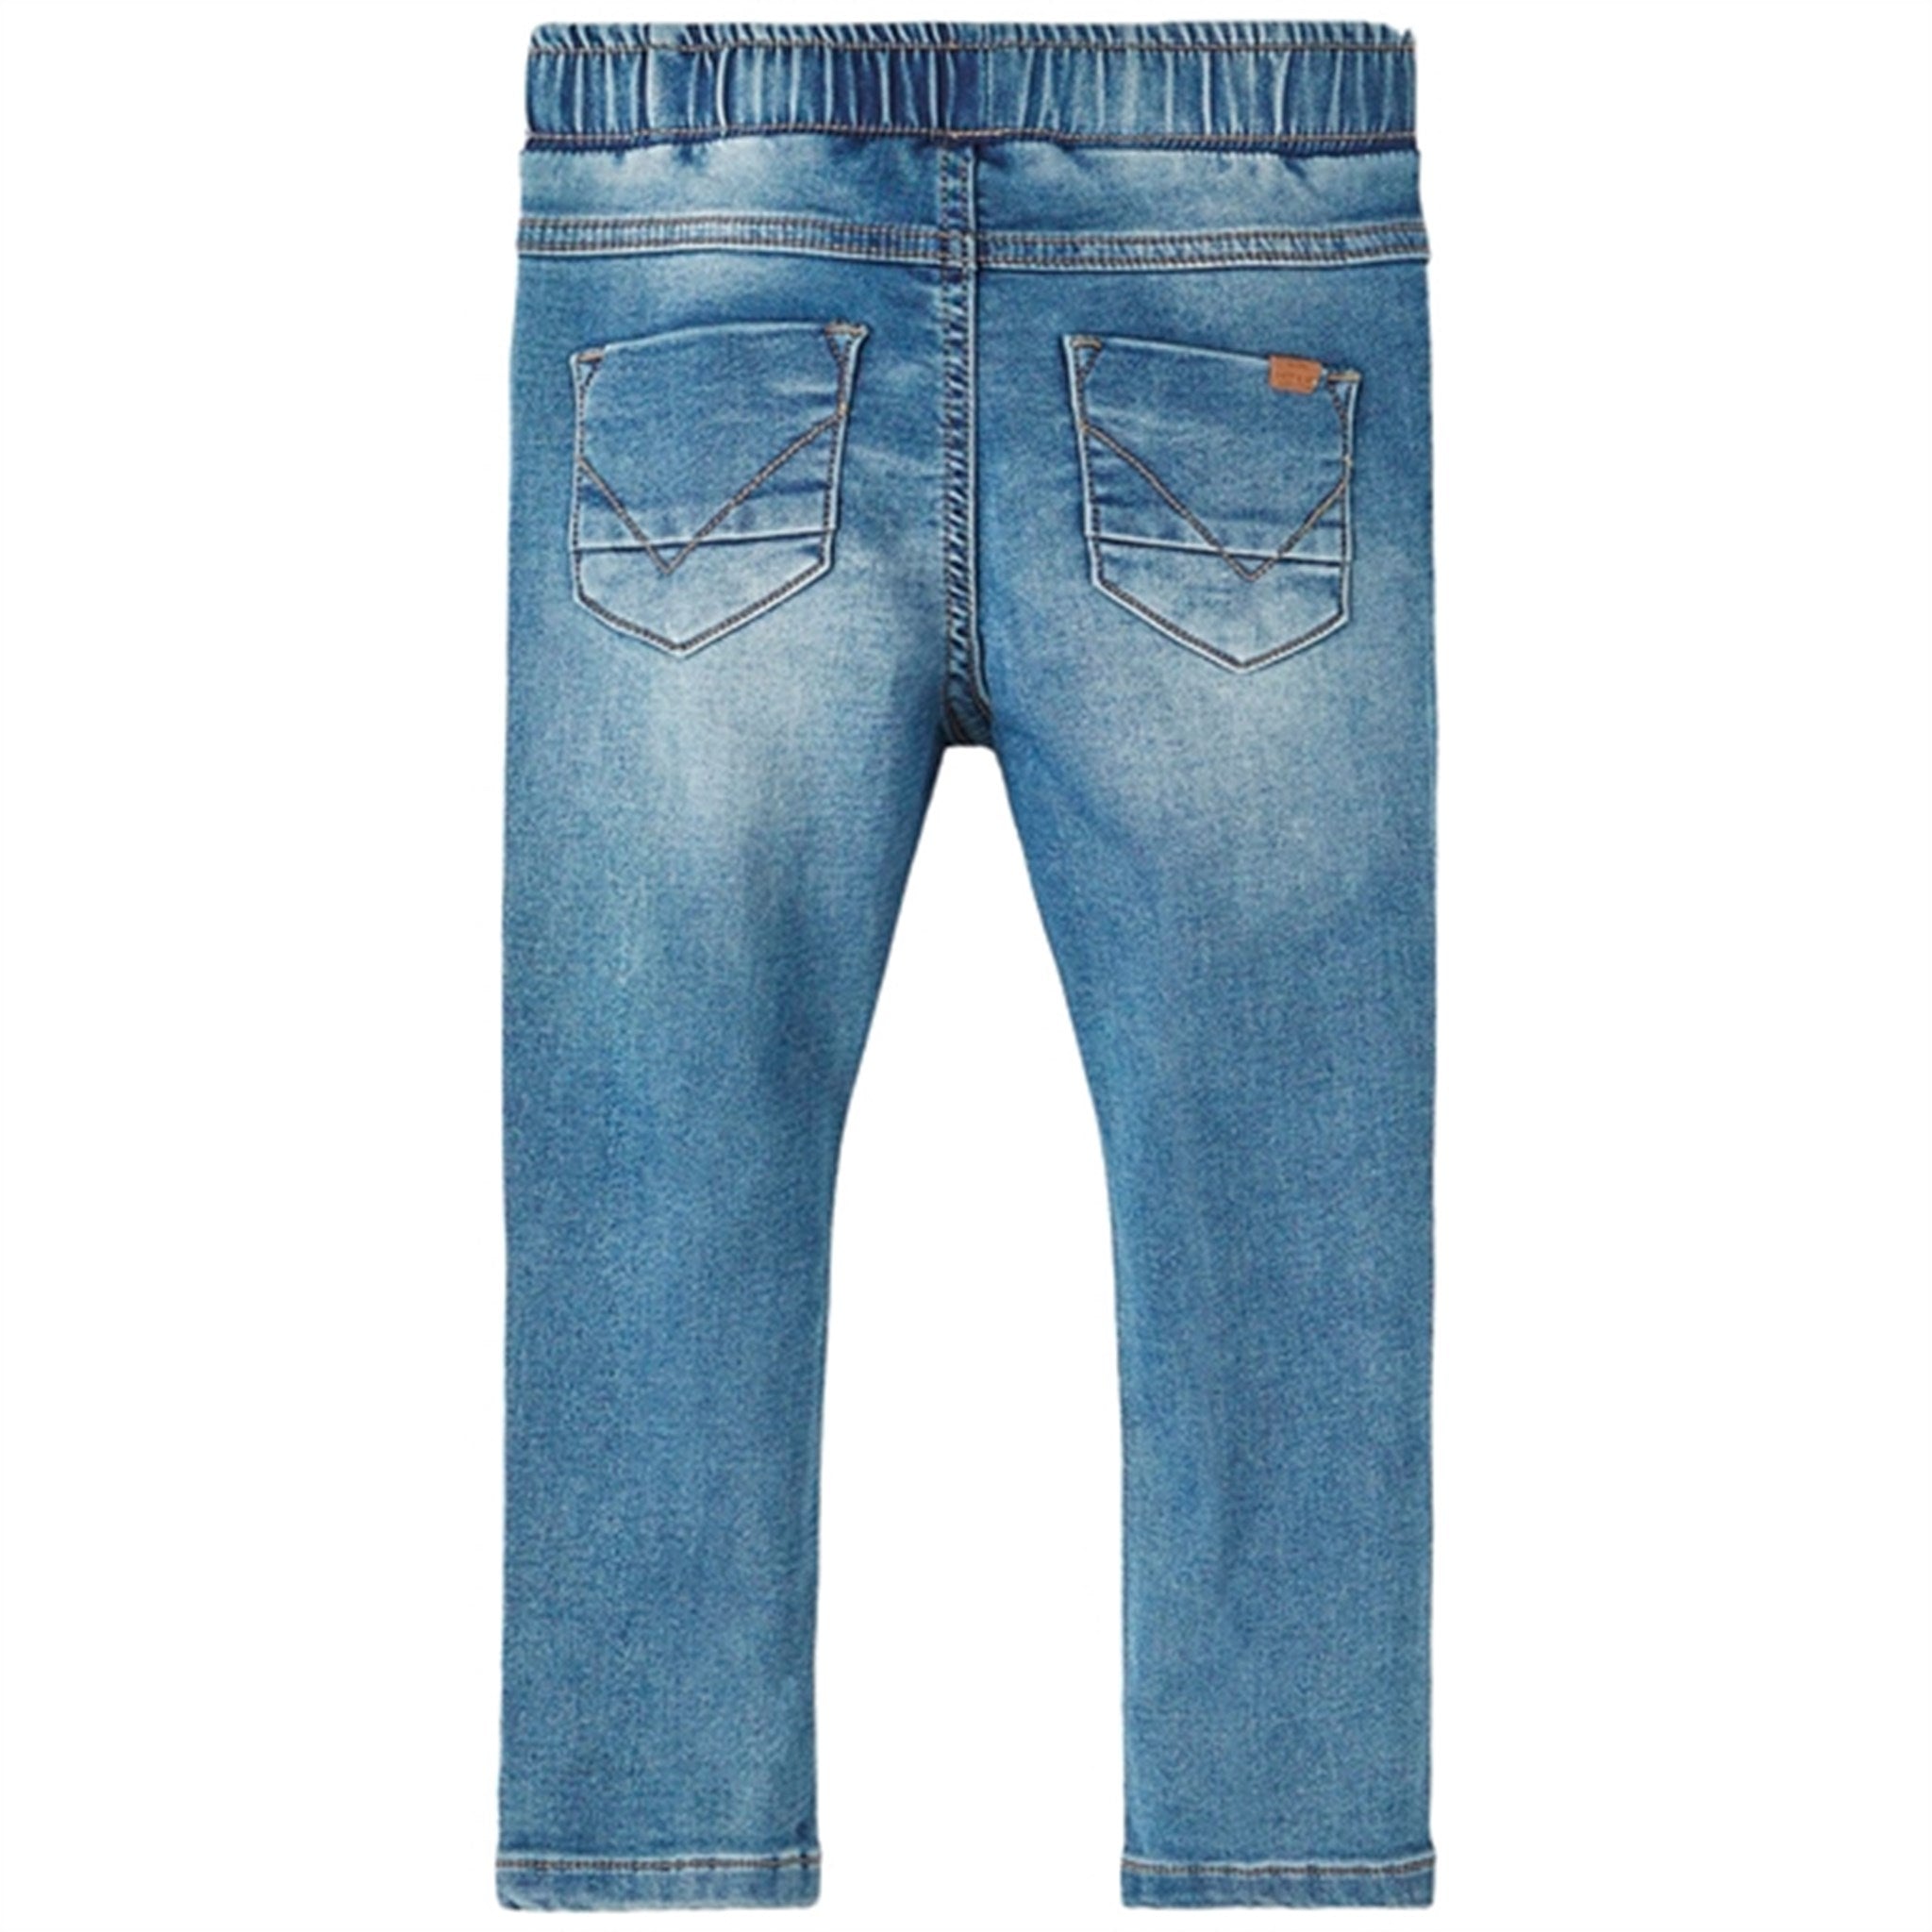 Name it Medium Blue Denim Ryan Slim Jeans Noos 6